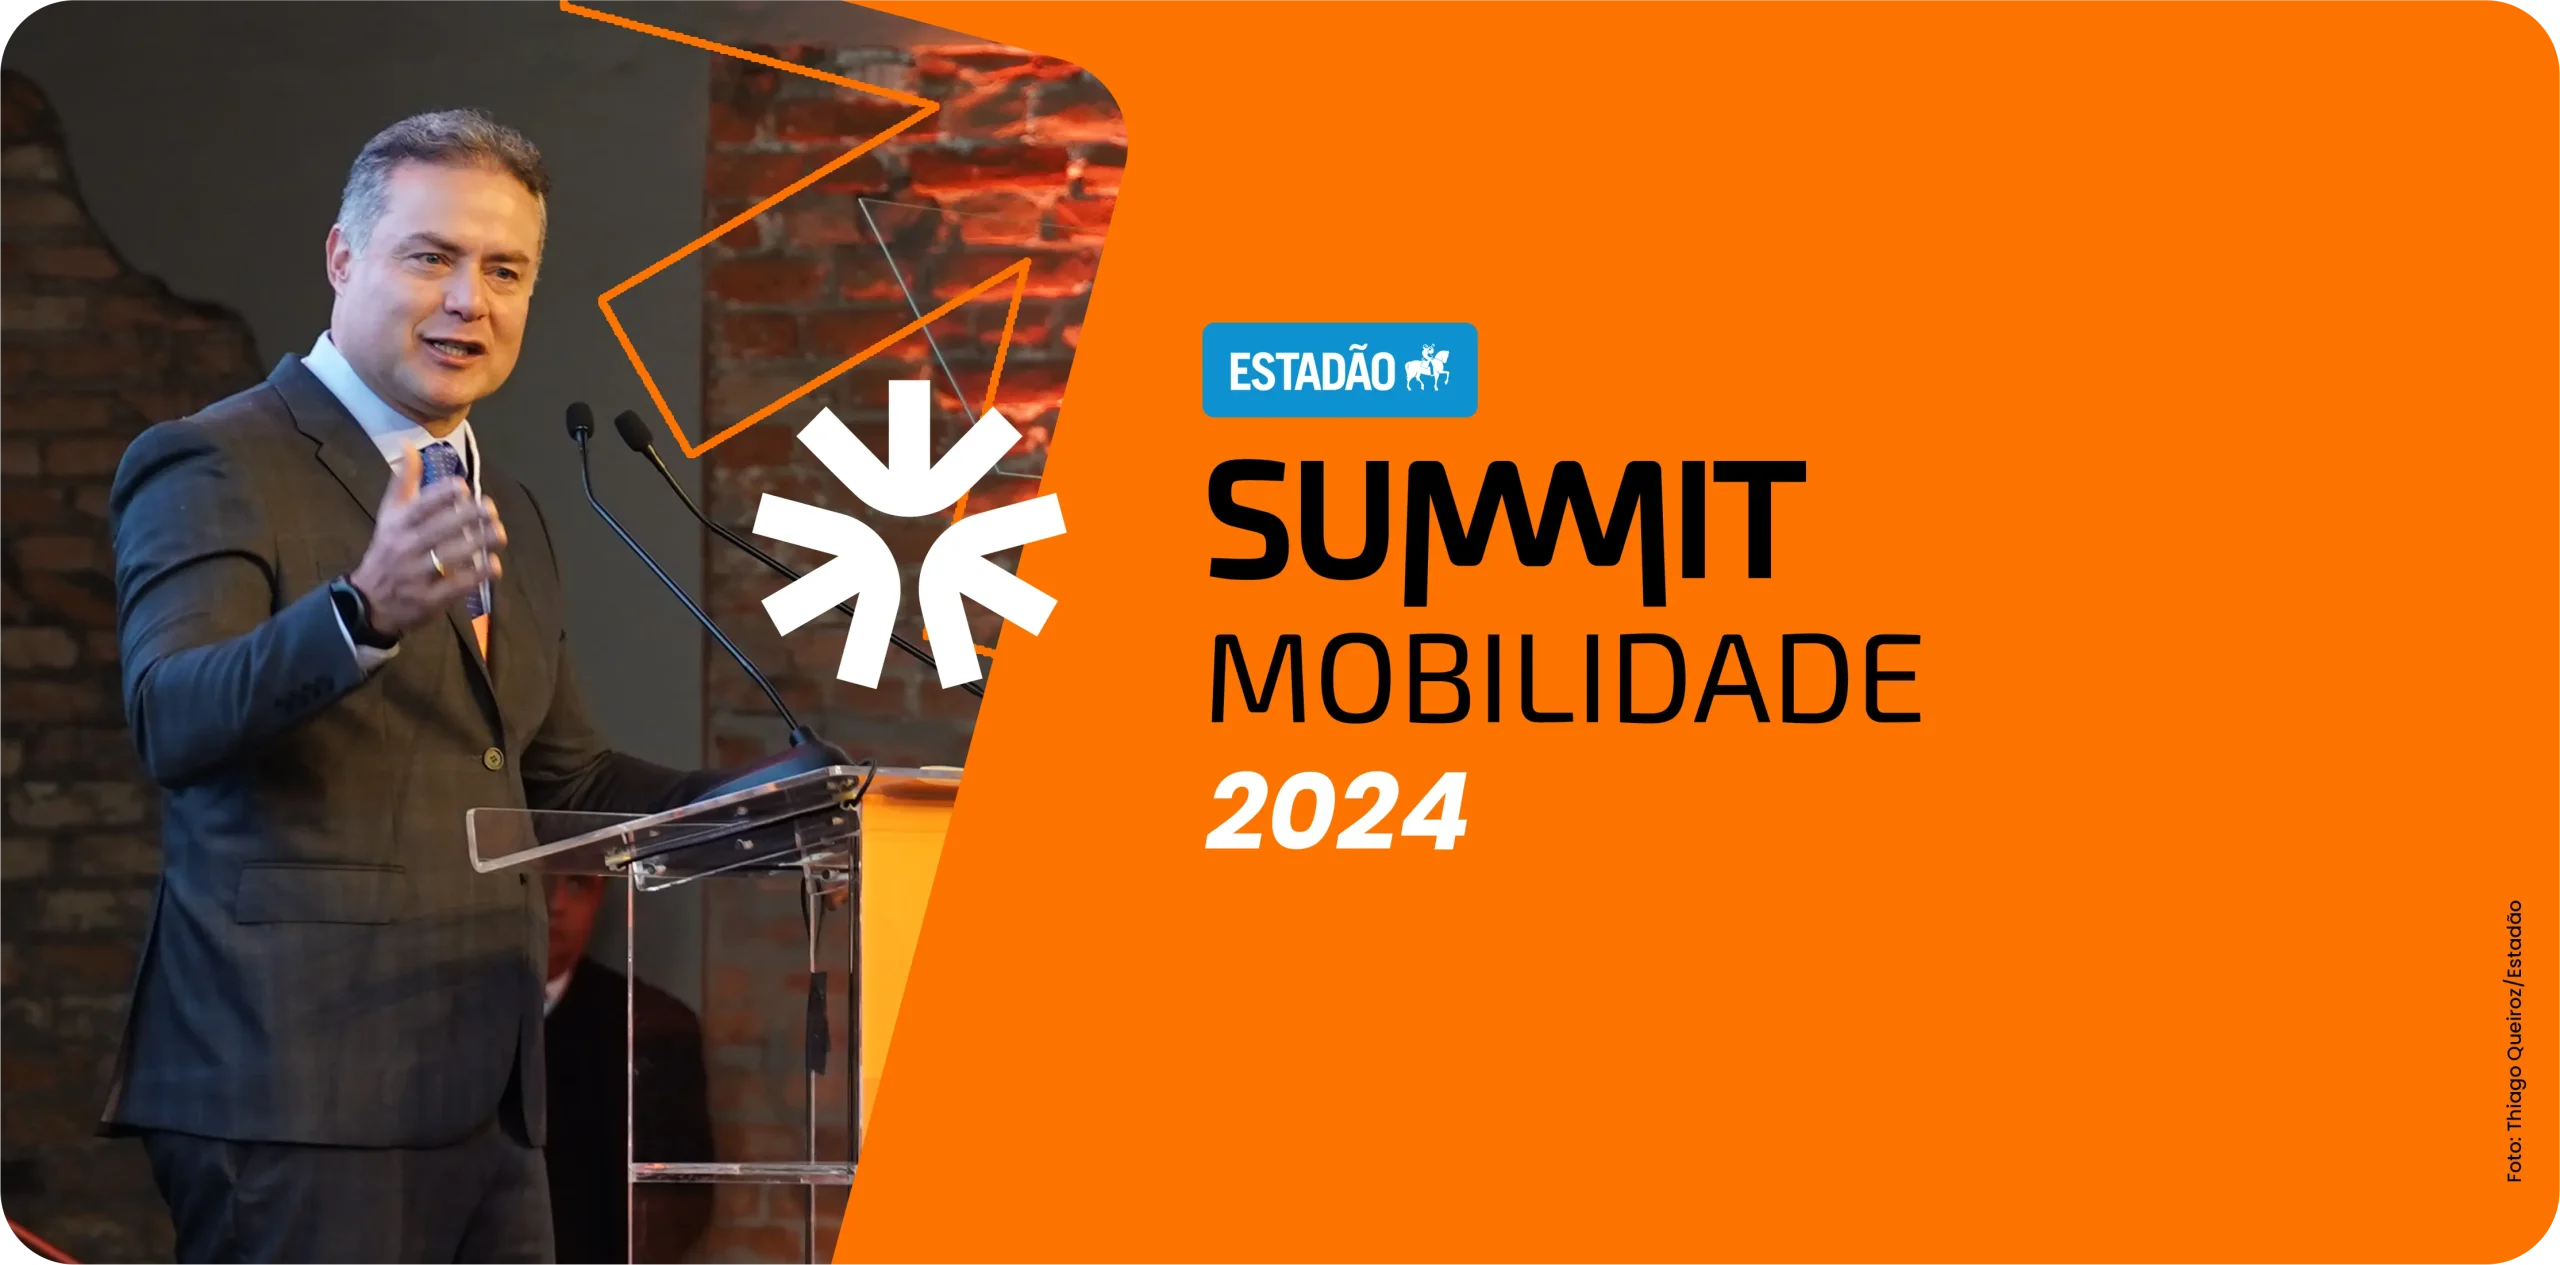 Summit Mobilidade 2024 discute desafios e perspectivas do transporte urbano e deslocamento ativo